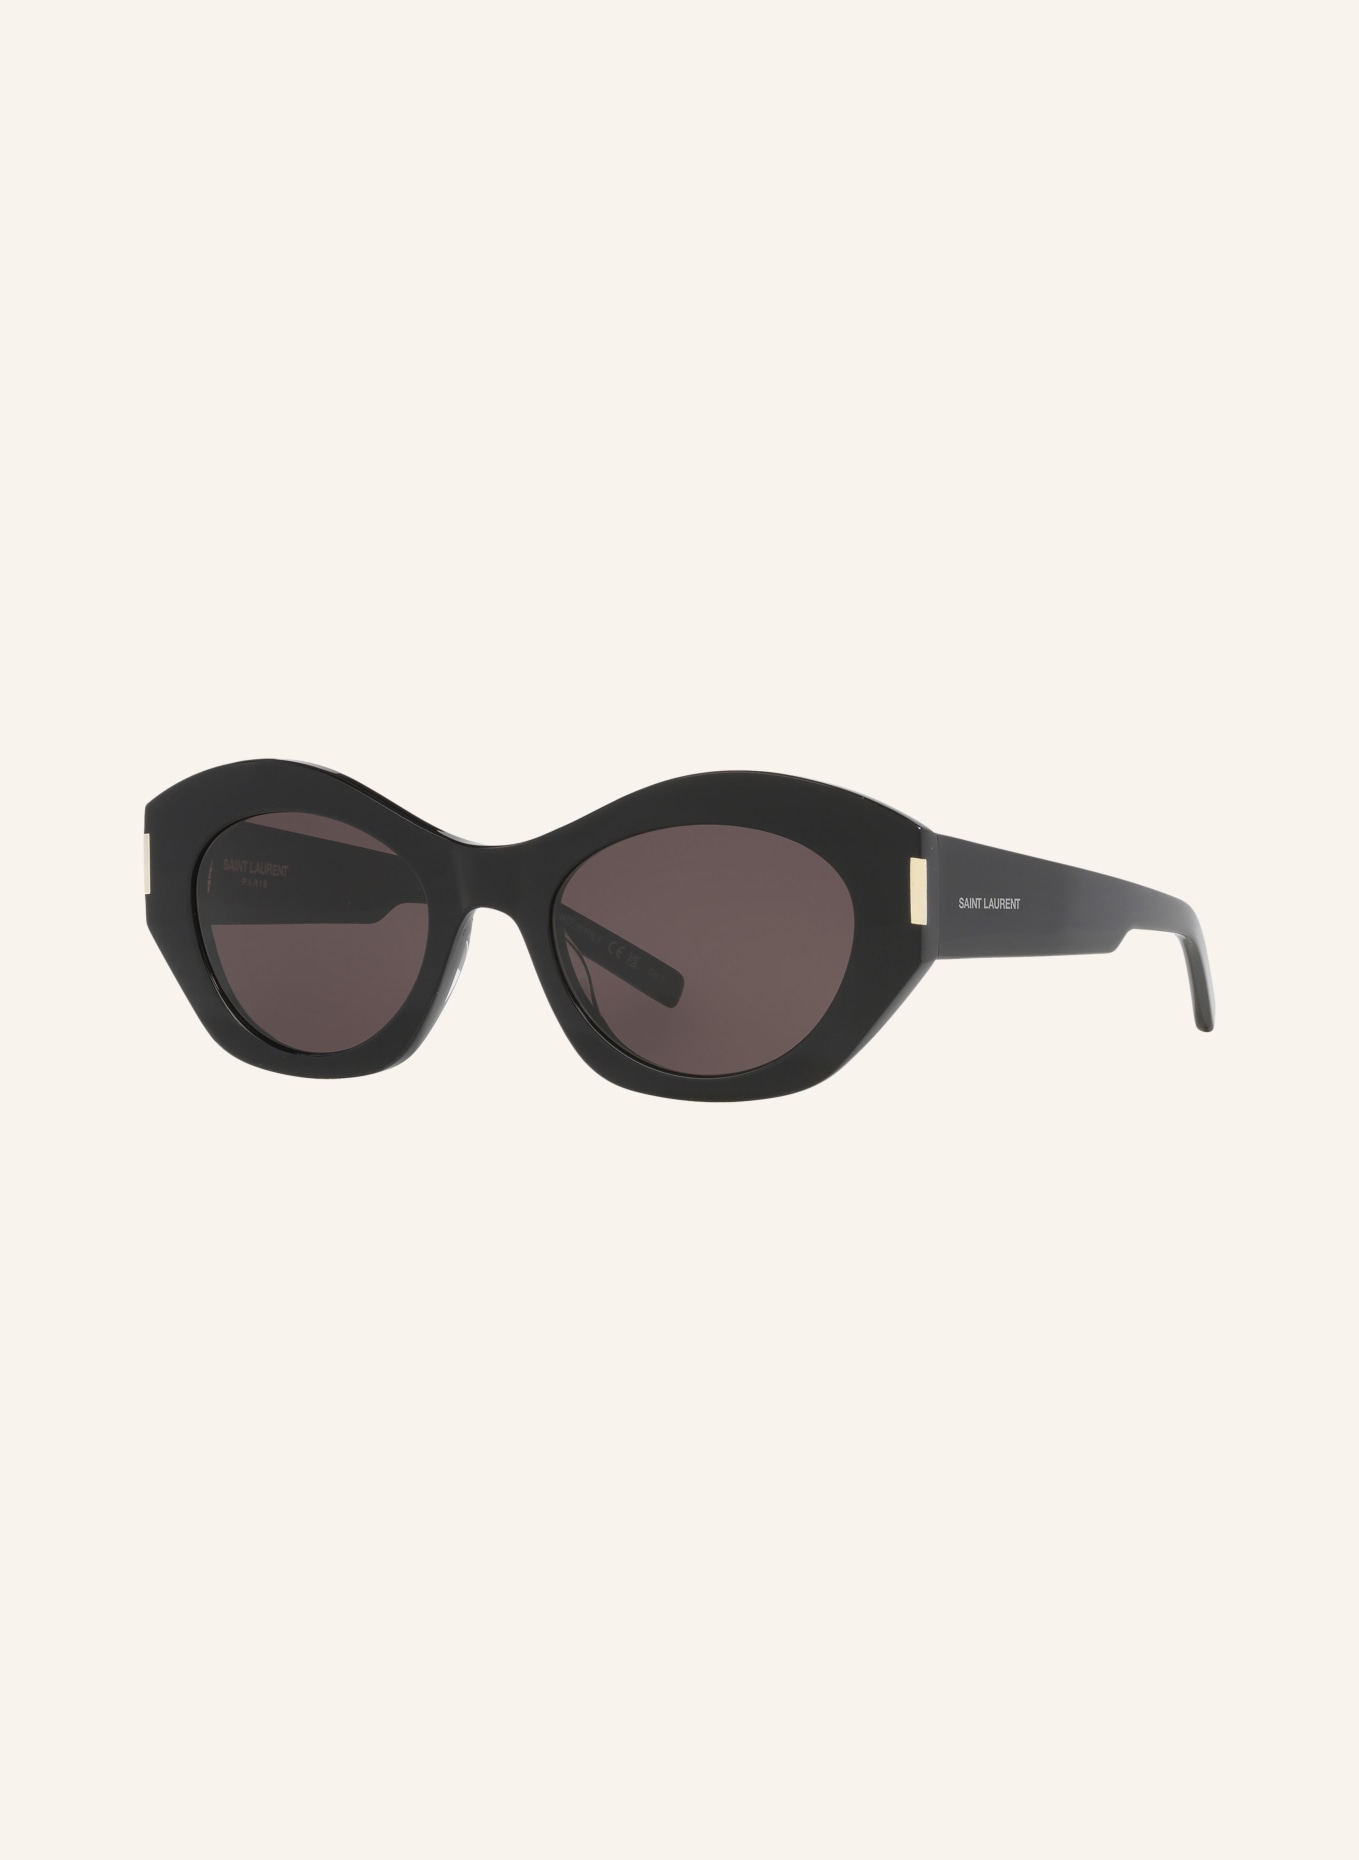 SAINT LAURENT Sunglasses SL 639, Color: 1100A1 - BLACK/GRAY (Image 1)